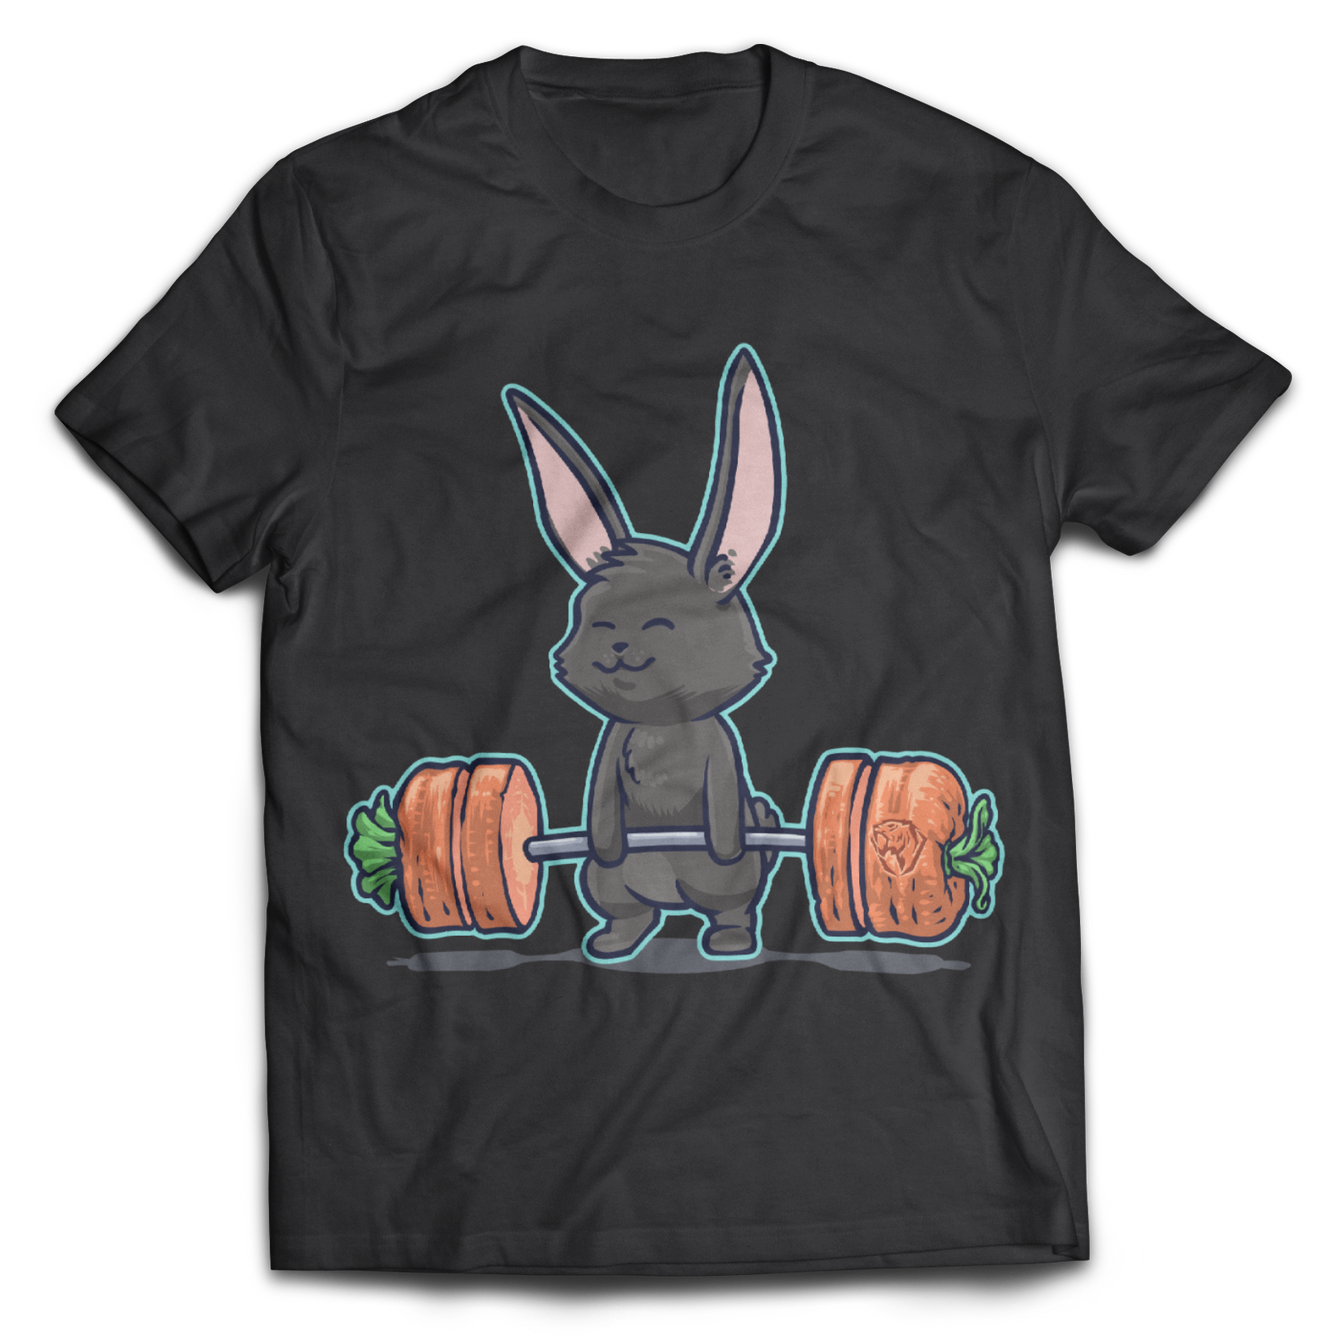 Deadlifting Black Bunny T-shirt